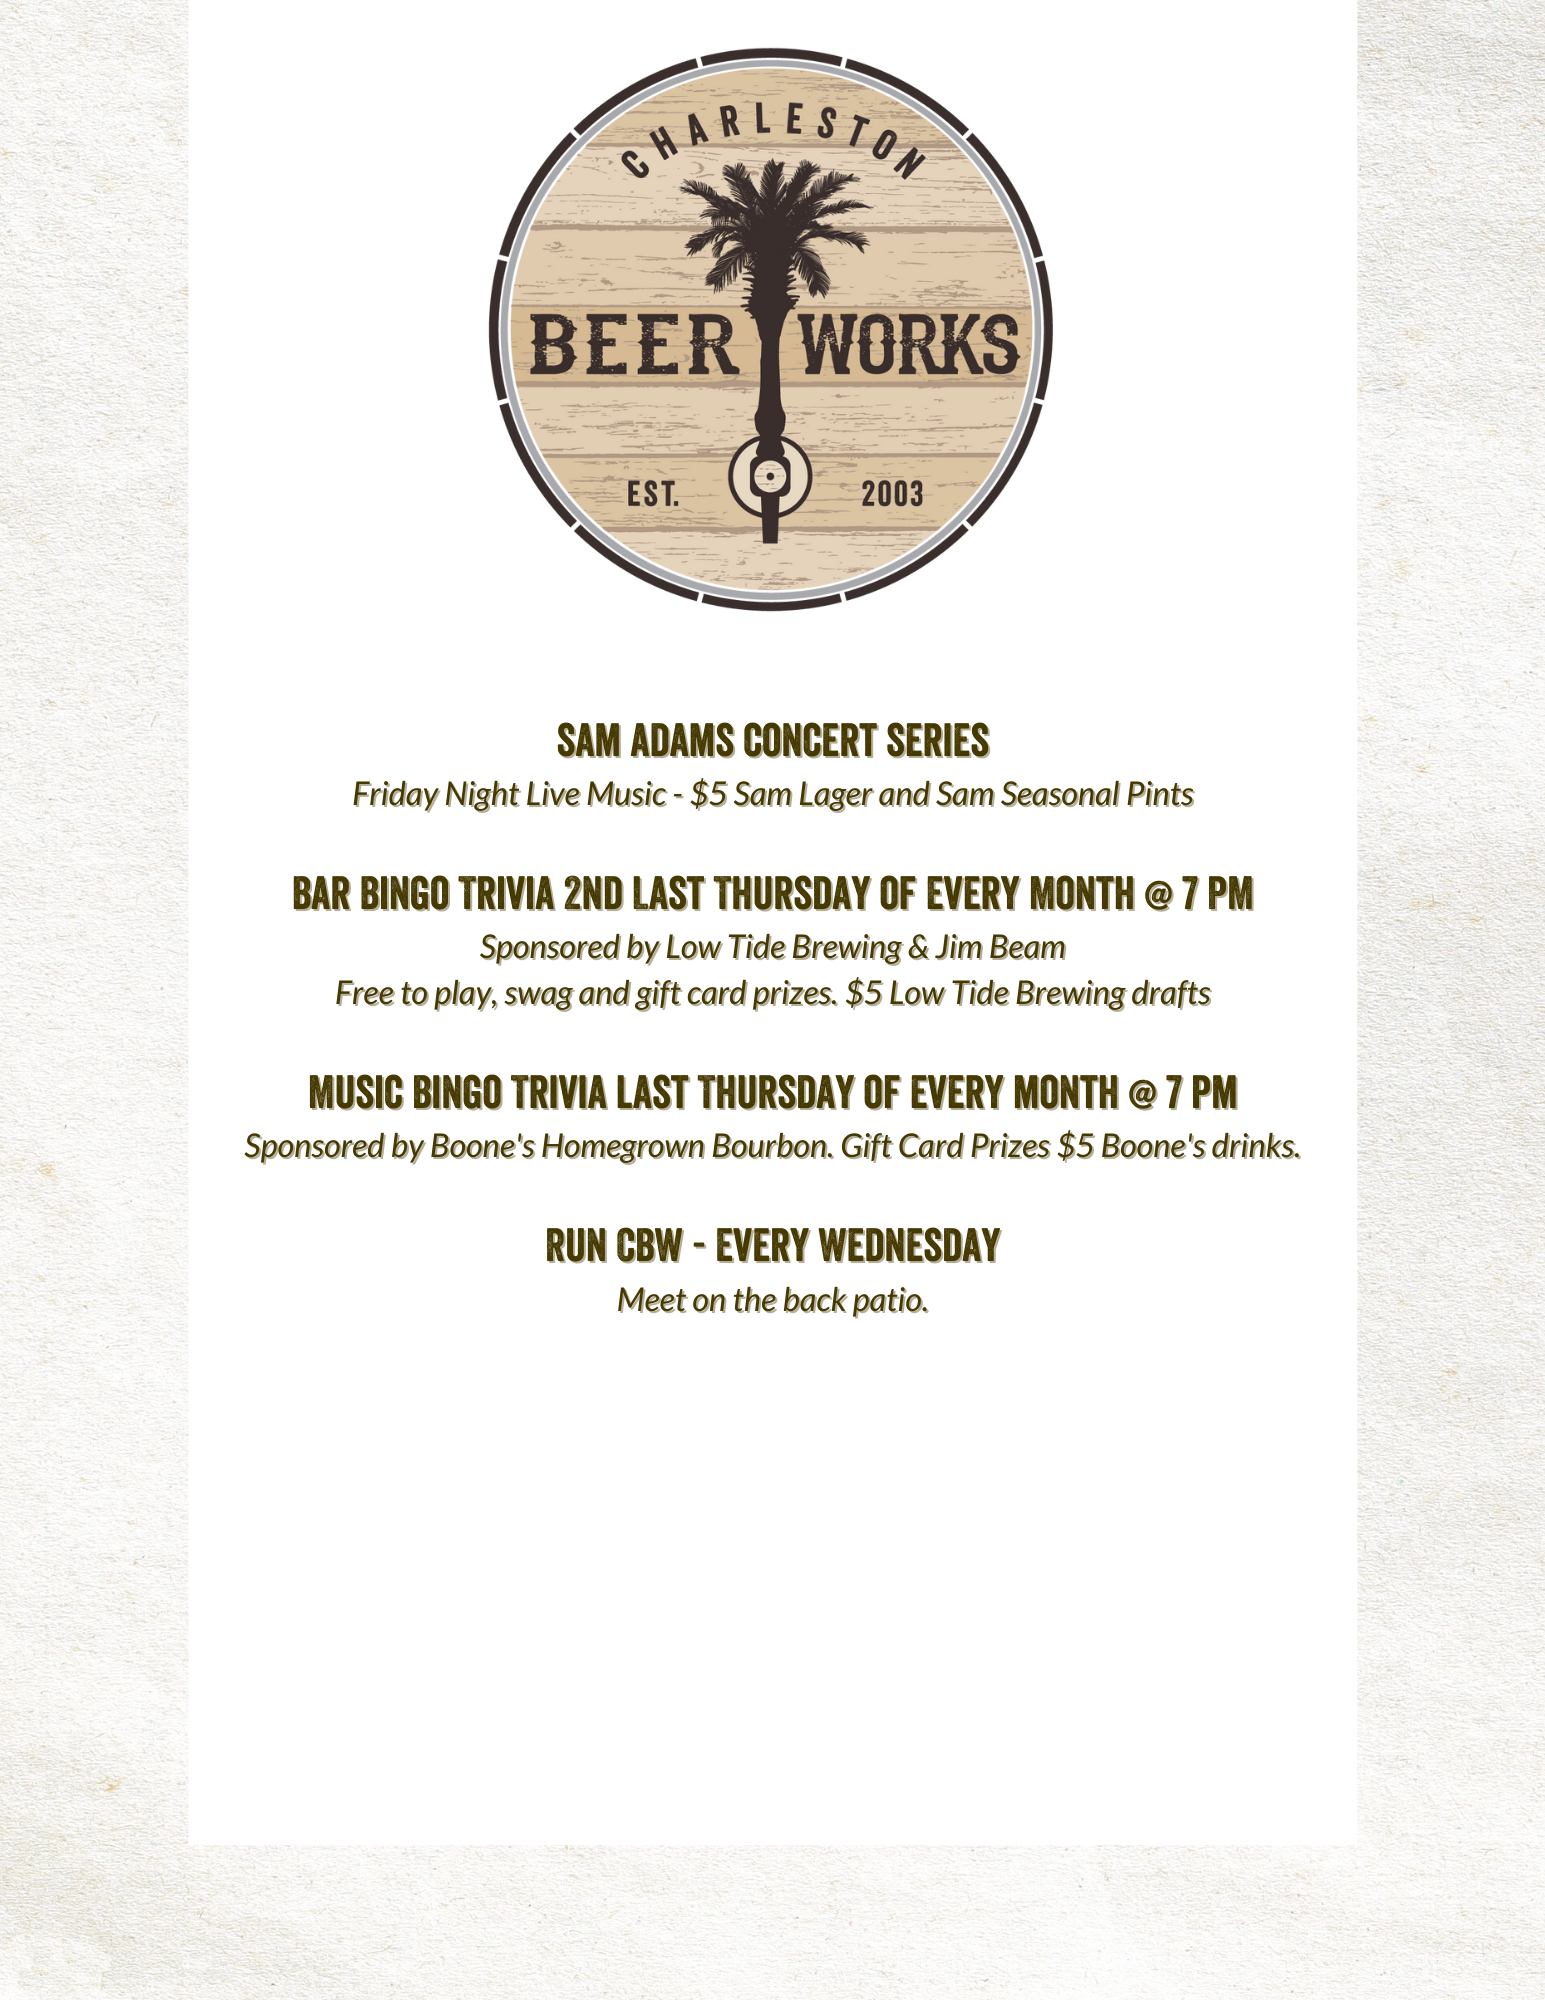 Charleston Beer Works Events (14)